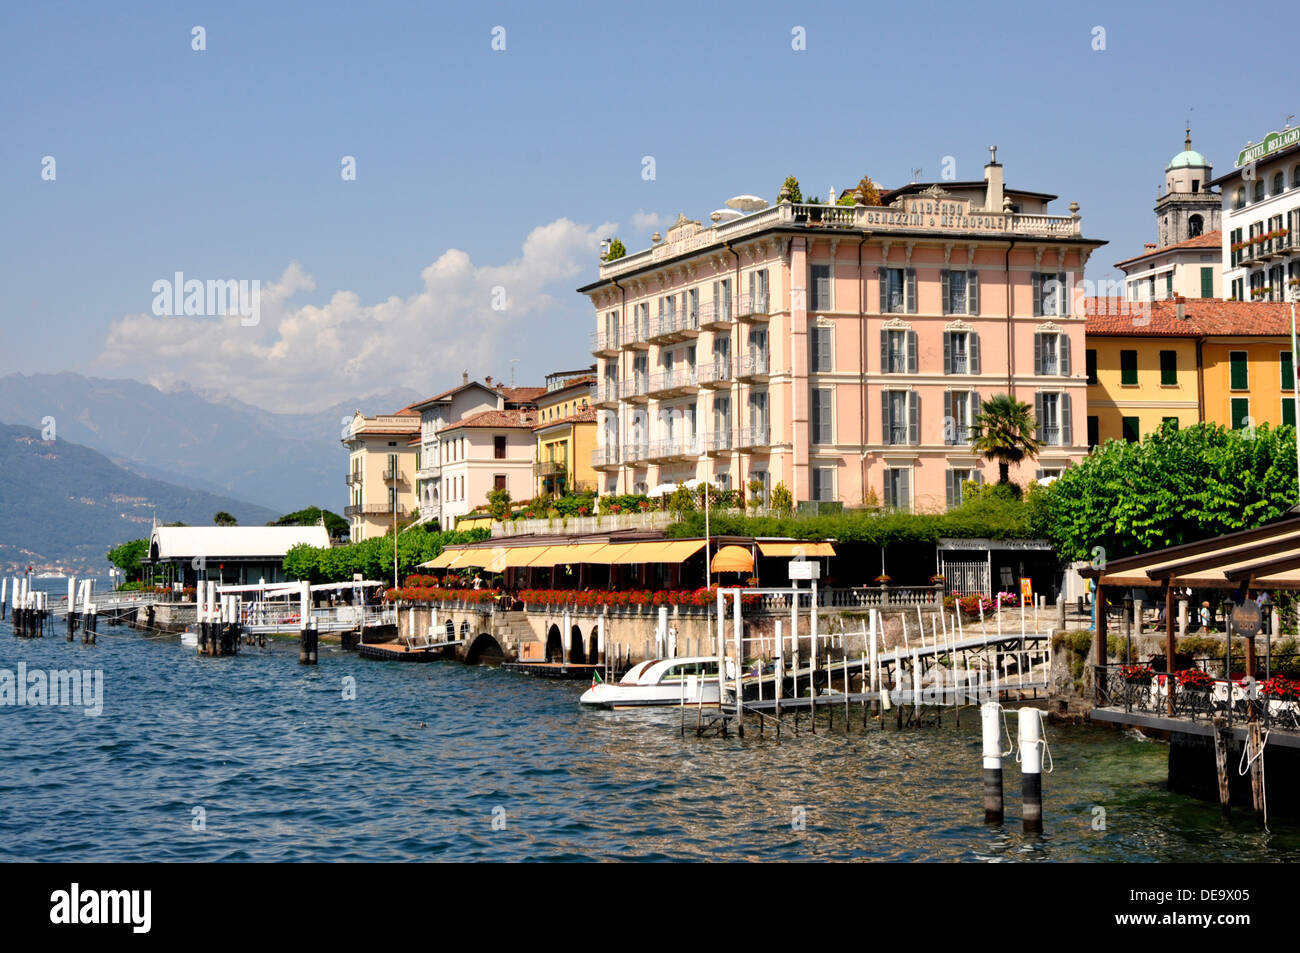 Italie - Lac de Côme - Bellagio - Hôtels - restaurants - cafés au bord de lac - balcons colorés des arbres ombreux du soleil Ciel bleu Banque D'Images